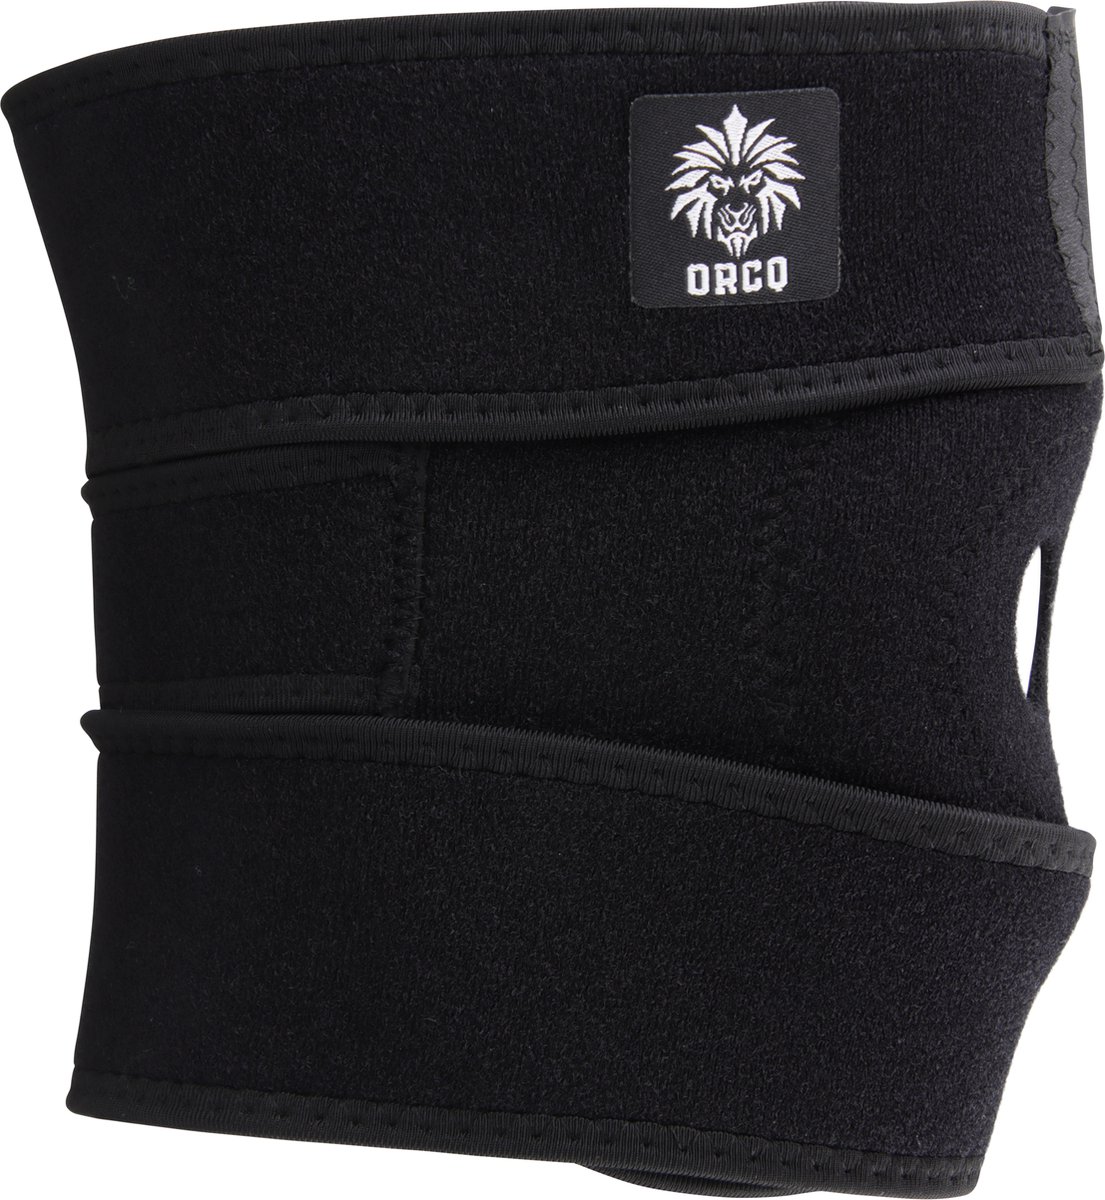 ORCQ - Kniebrace - Kniebandage - Klittenband Verstelbaar - Premium Kniestrap - Knieondersteuning - Verstelbaar Links en Rechts - Zwart